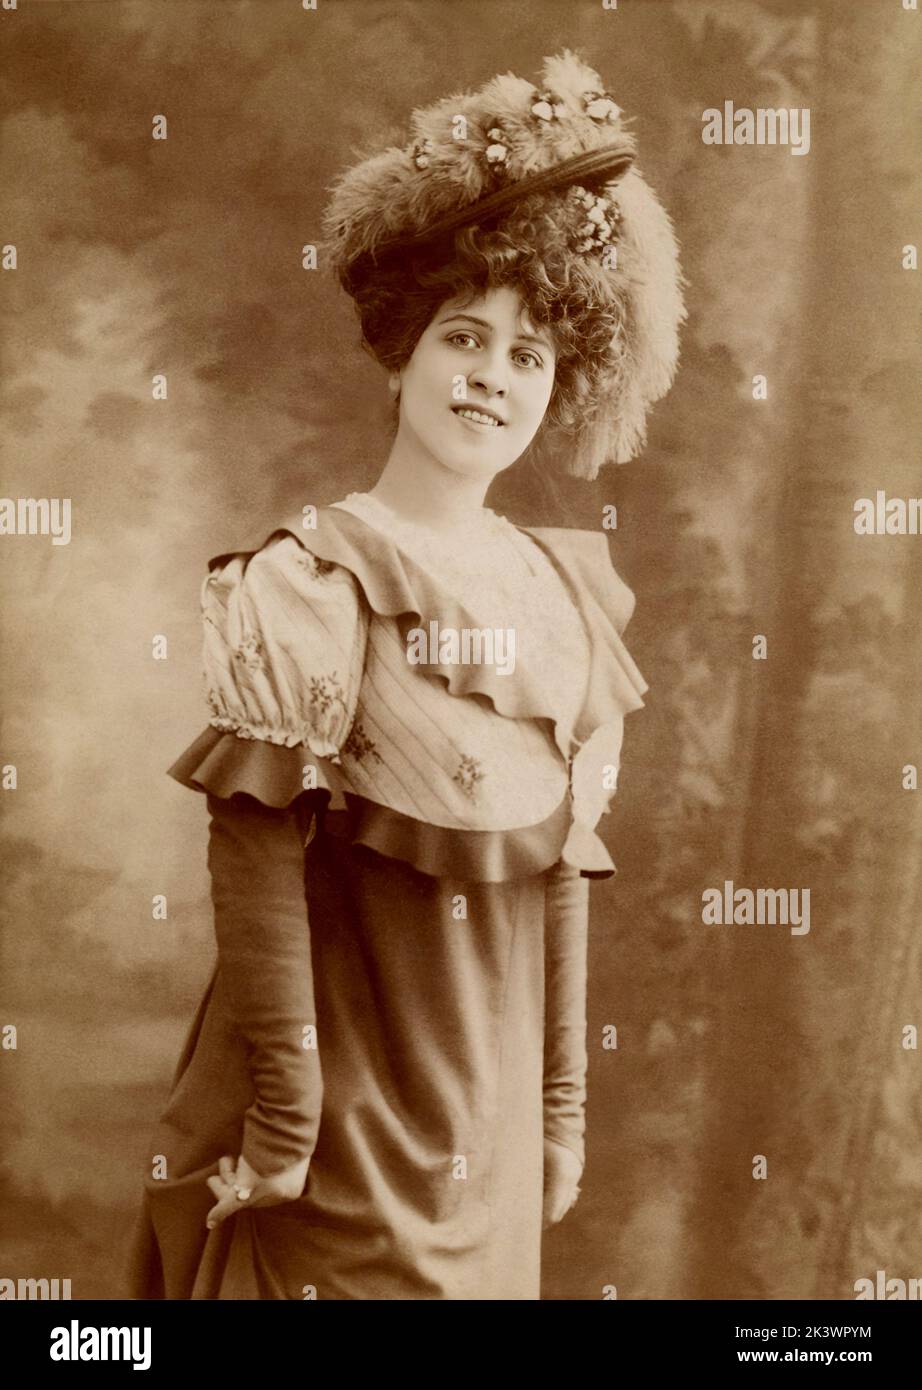 1899 ca, Parigi , FRANCIA : l'attrice francese del cinema e del cinema silenzioso BRESIL ( 1880 - 1961 ) nata Marguerite Lucile Brésil Neurdein . Foto di Jean Reutlinger ( 1875 - 1917 ) . - TEATRO - TEATRO - CINEMA MUTO - FRANCIA - RITRATTO - RITRATTO - MODA - MODA FEMMINILE - CAPPELLO - CAPPELLO - CAPPELLO - DIVA - DIVINA - BELLE EPOQUE - PIUME DI STRUZZO - SORRISO - SORRISO - STORIA - FOTO STORICHE - RITRATTO - RITRATTO - RITRATTO - - ARCHIVIO GBB Foto Stock